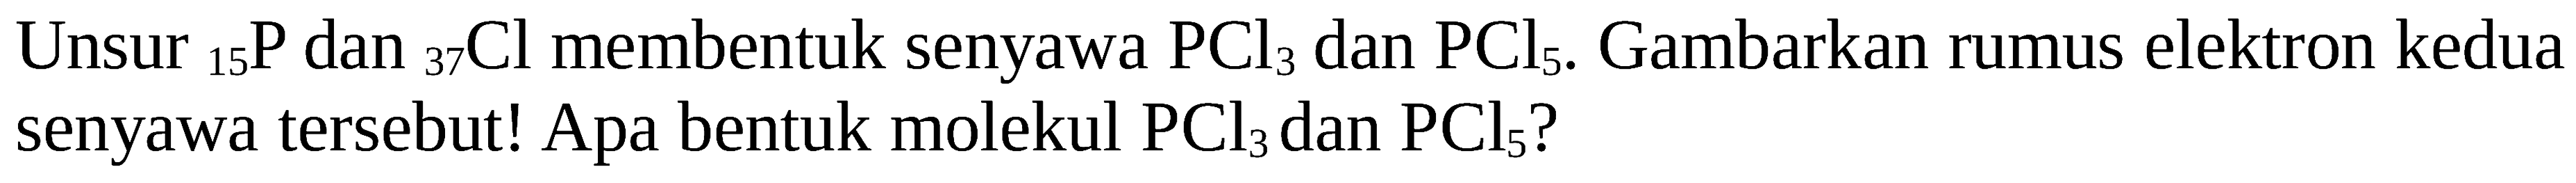 Unsur  { )_(15) kg  dan  { )_(37) Cl  membentuk senyawa  PCl3  dan  PCl5 . Gambarkan rumus elektron kedua senyawa tersebut! Apa bentuk molekul  PCl3  dan  PCl5  ?